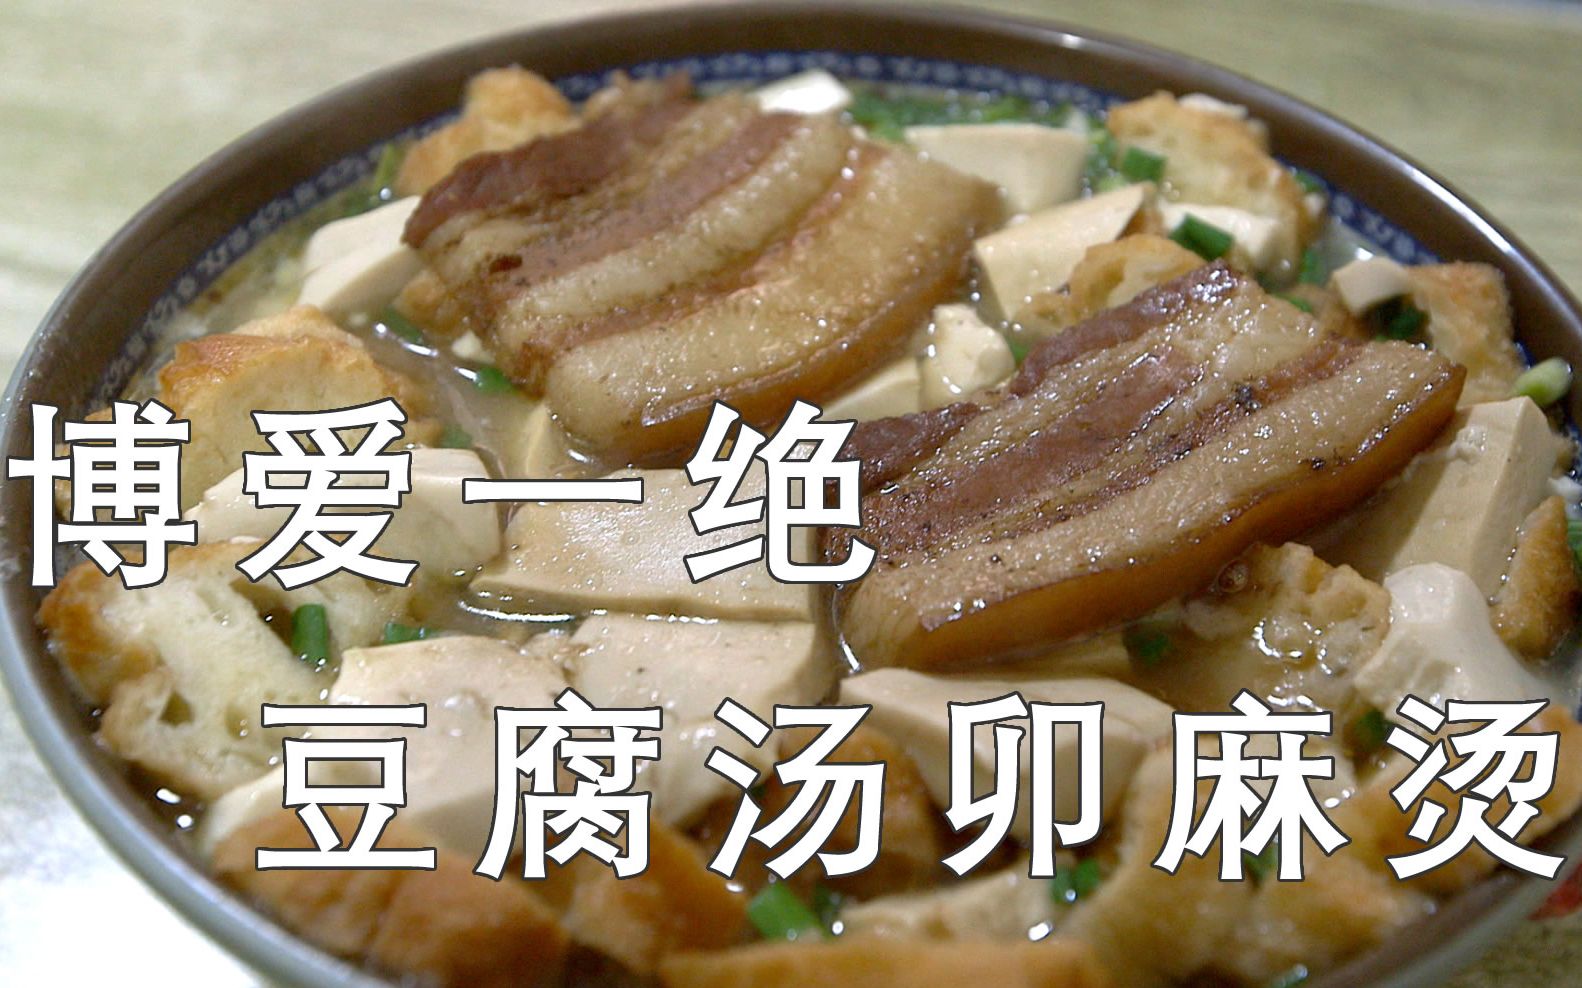 焦作博爱清化传统名吃,豆腐汤卯麻烫,只有在当地才能吃到的美味早餐